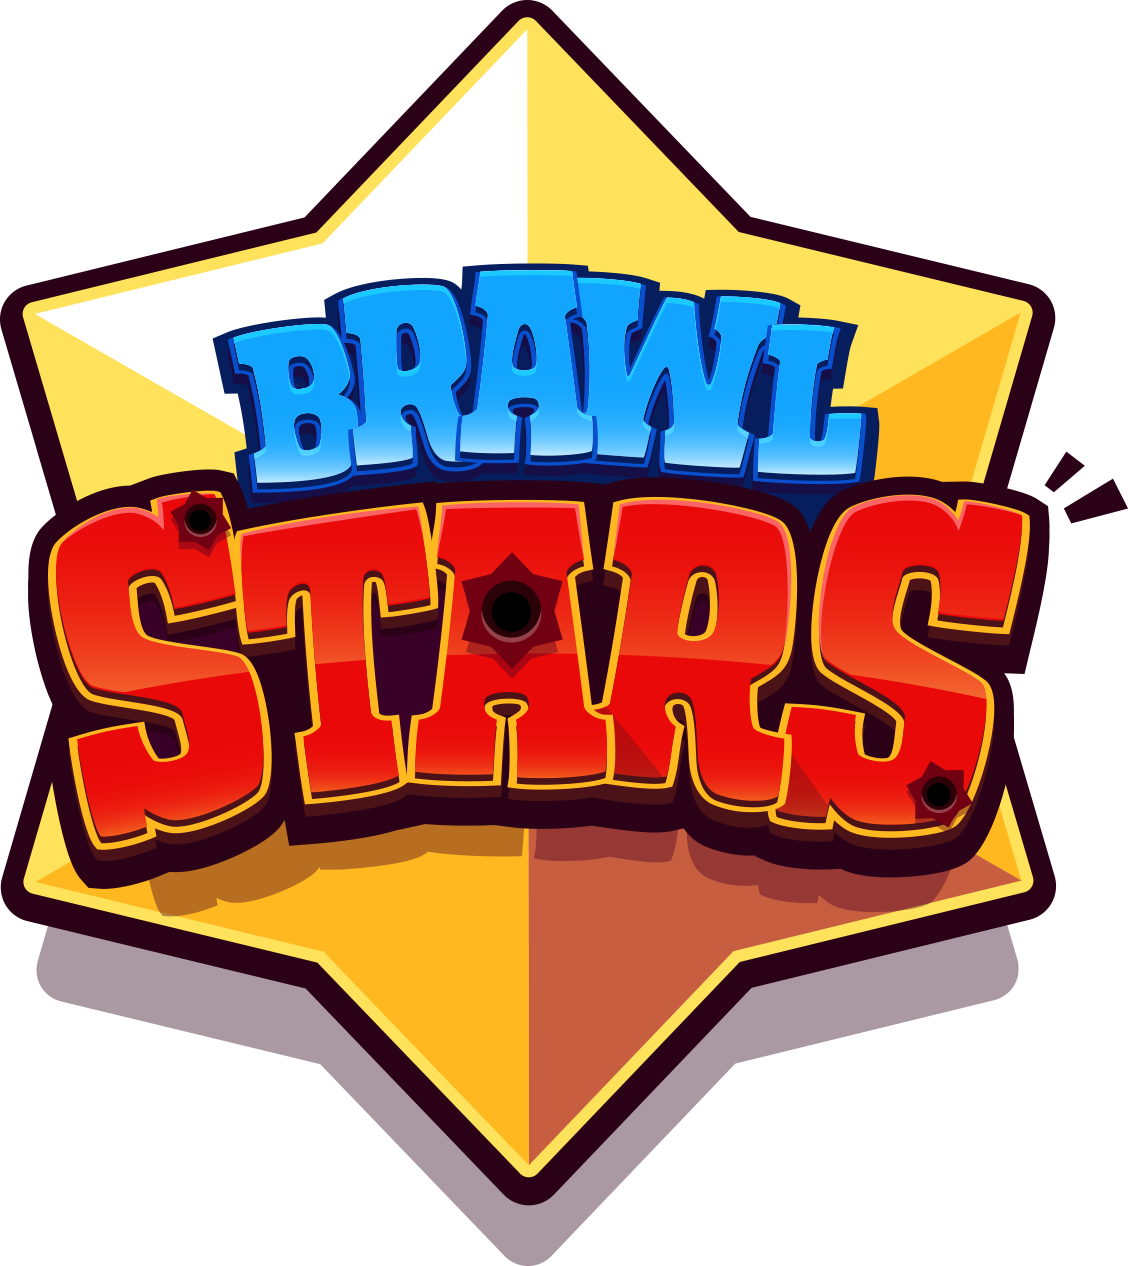 Бравл старс логотип. Браво старс логотип. Логотип игры Brawl Stars. Значок старого БРАВЛ старс. Знак БРАВЛ старса.